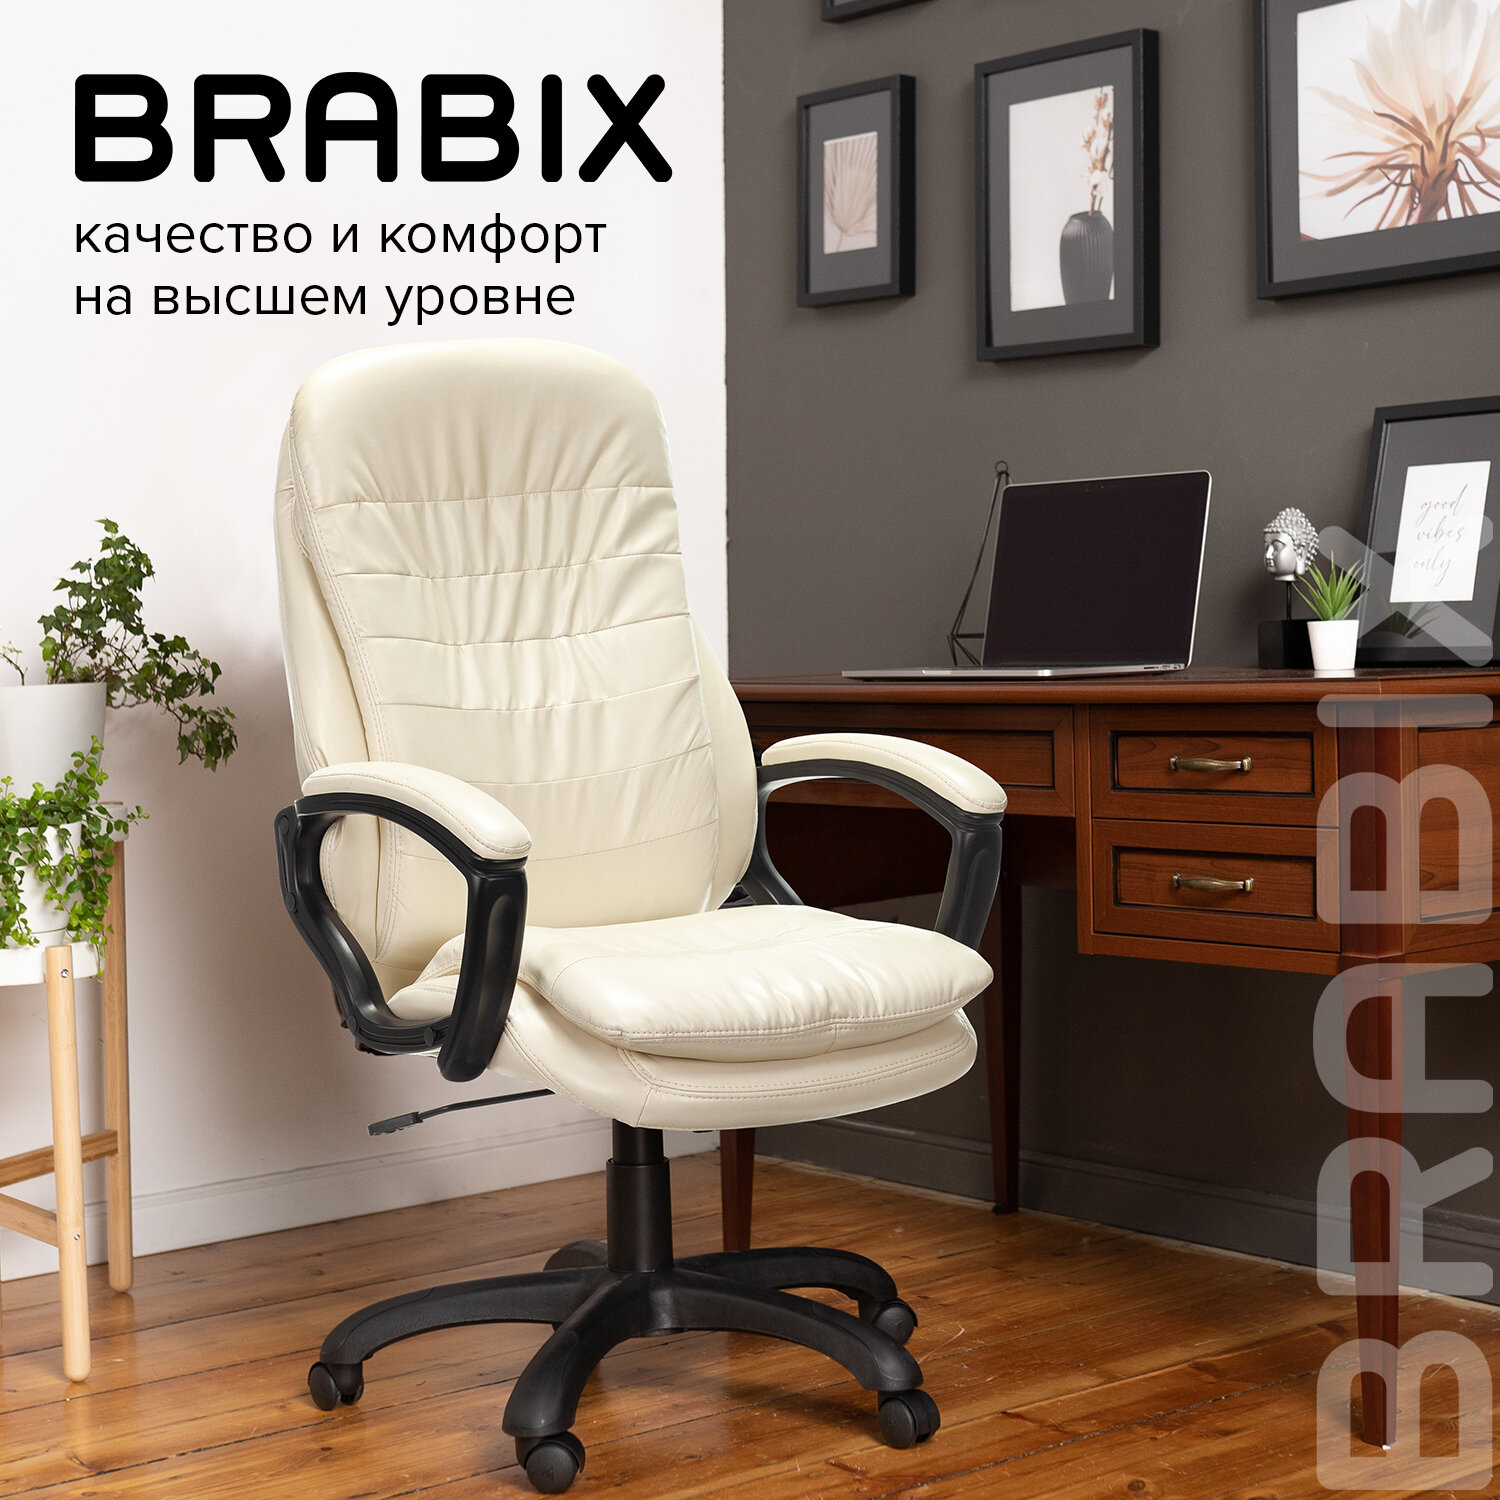 Кресло офисное Brabix trend ex-568, экокожа, коричневое Brabix 2064921